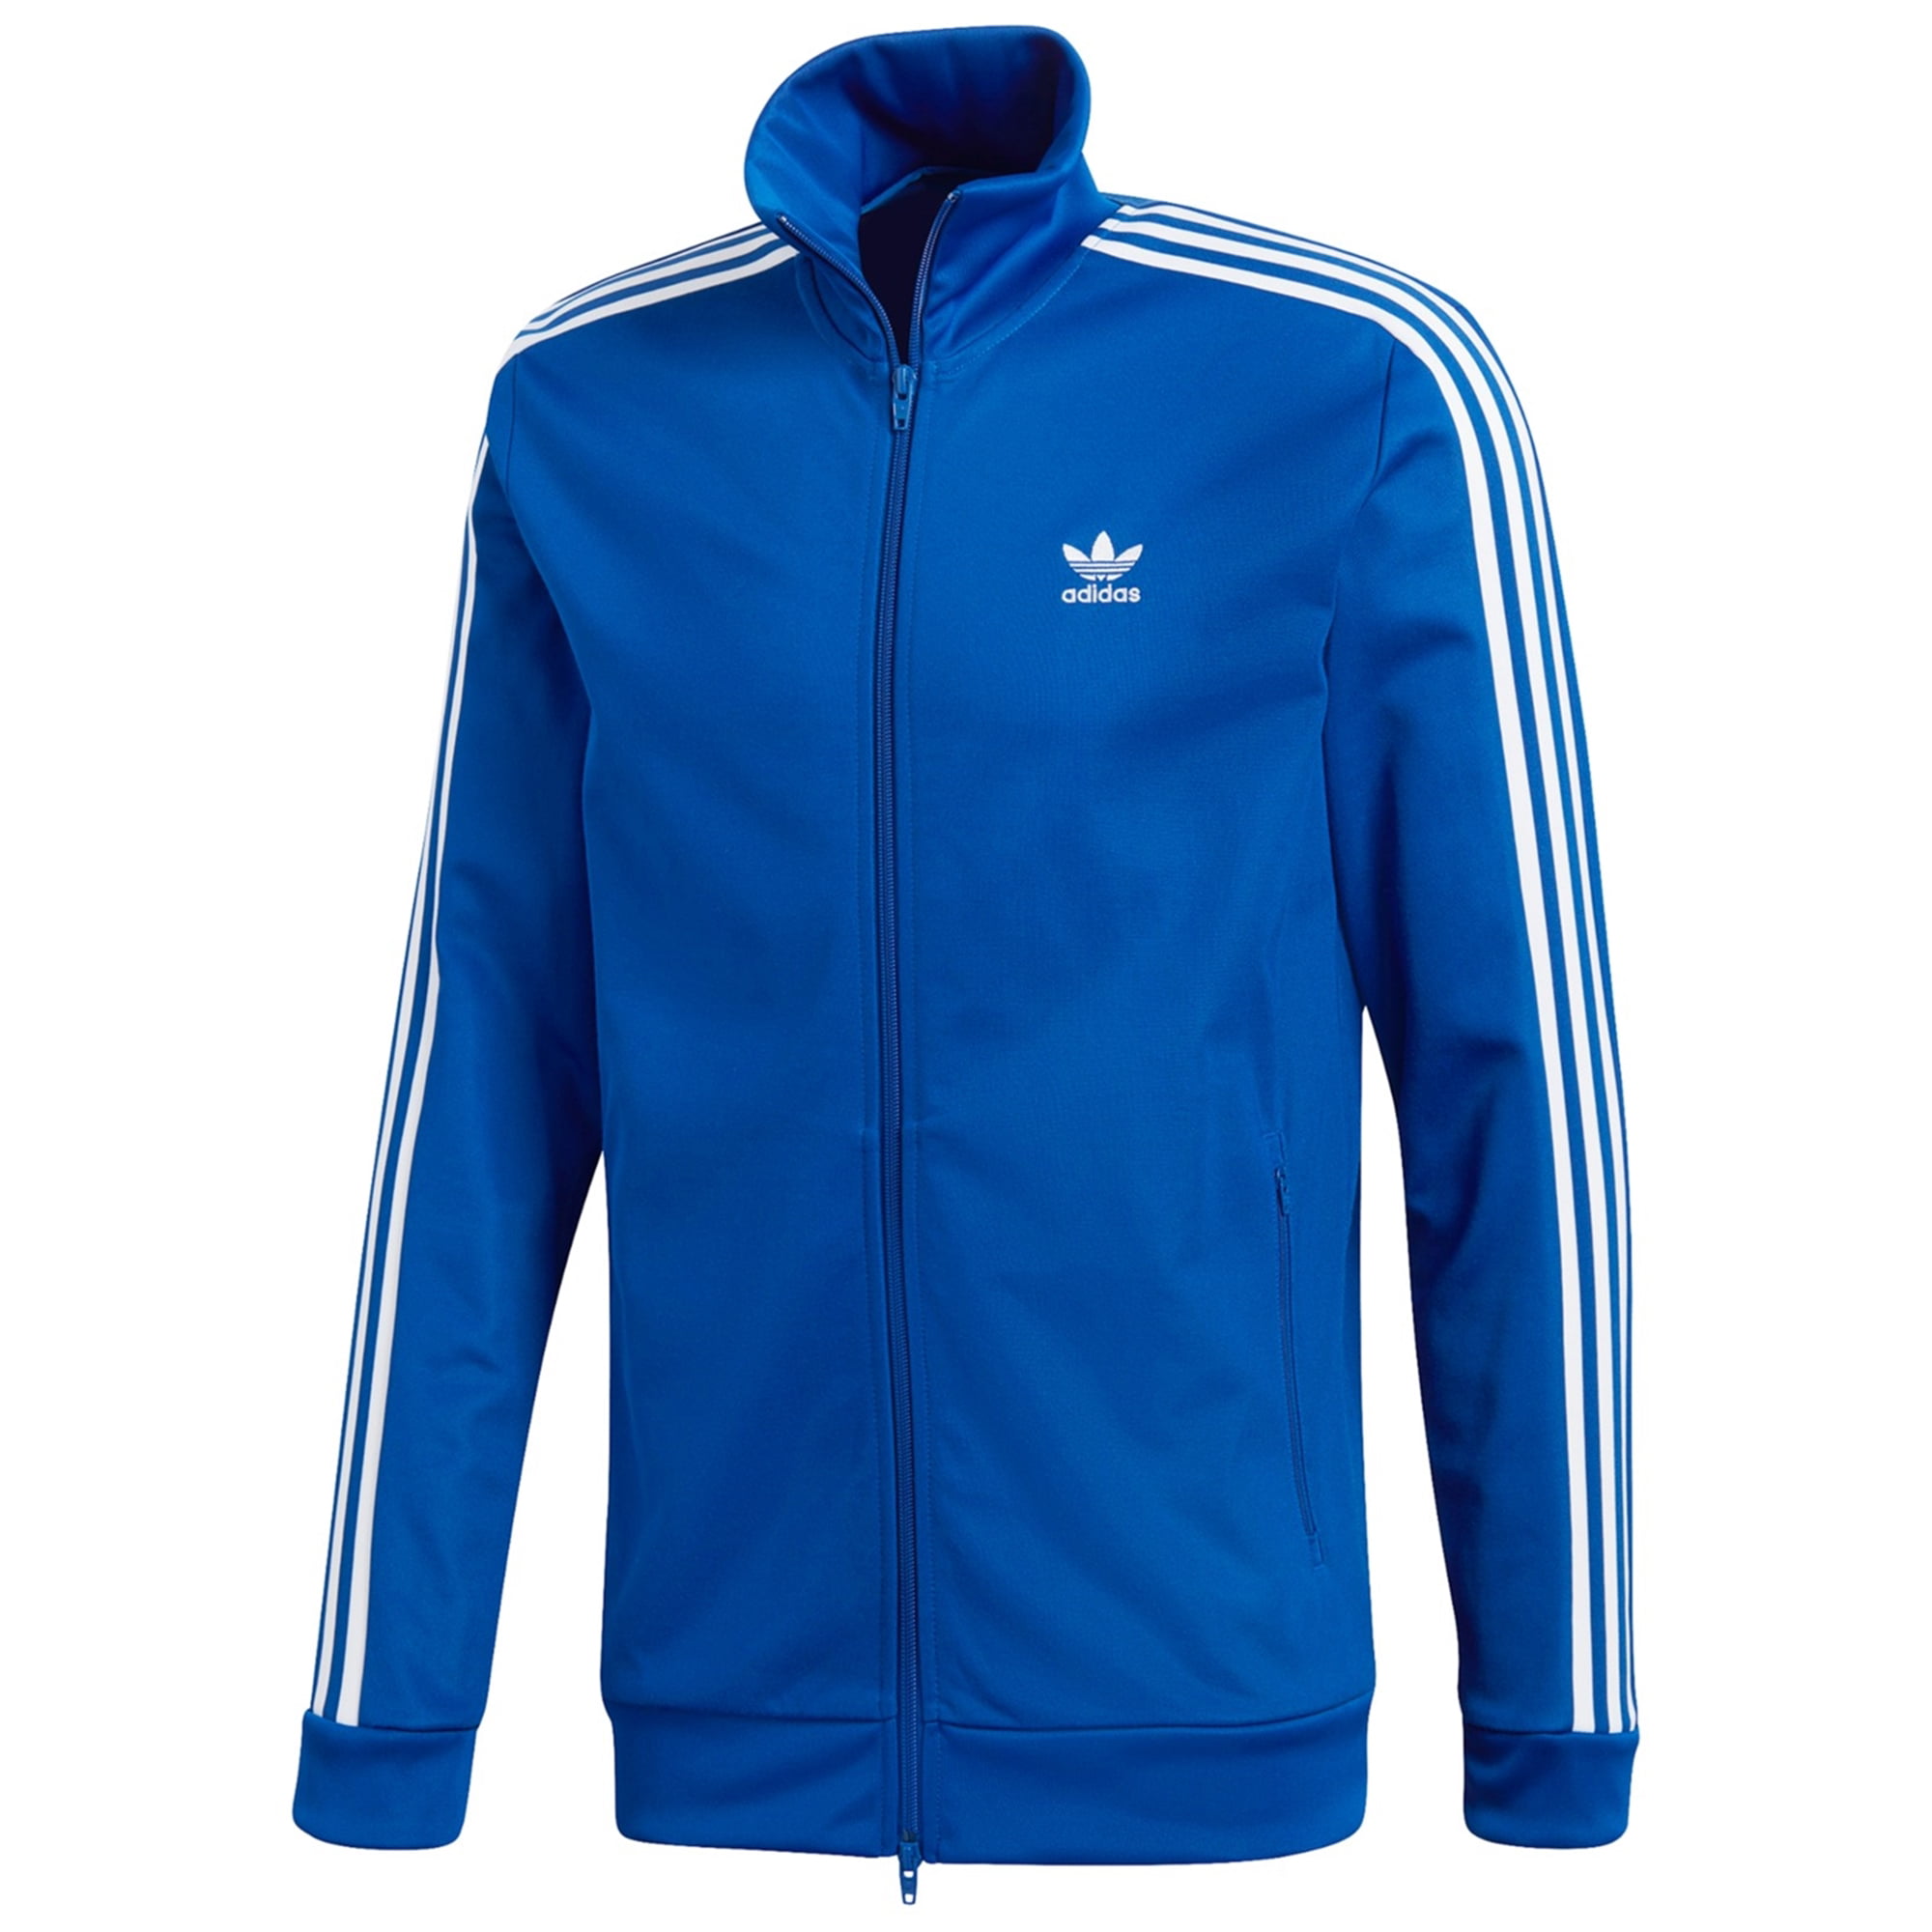 Adidas - Adidas Mens Three Stripe Sleeves Track Jacket, Blue, Medium ...